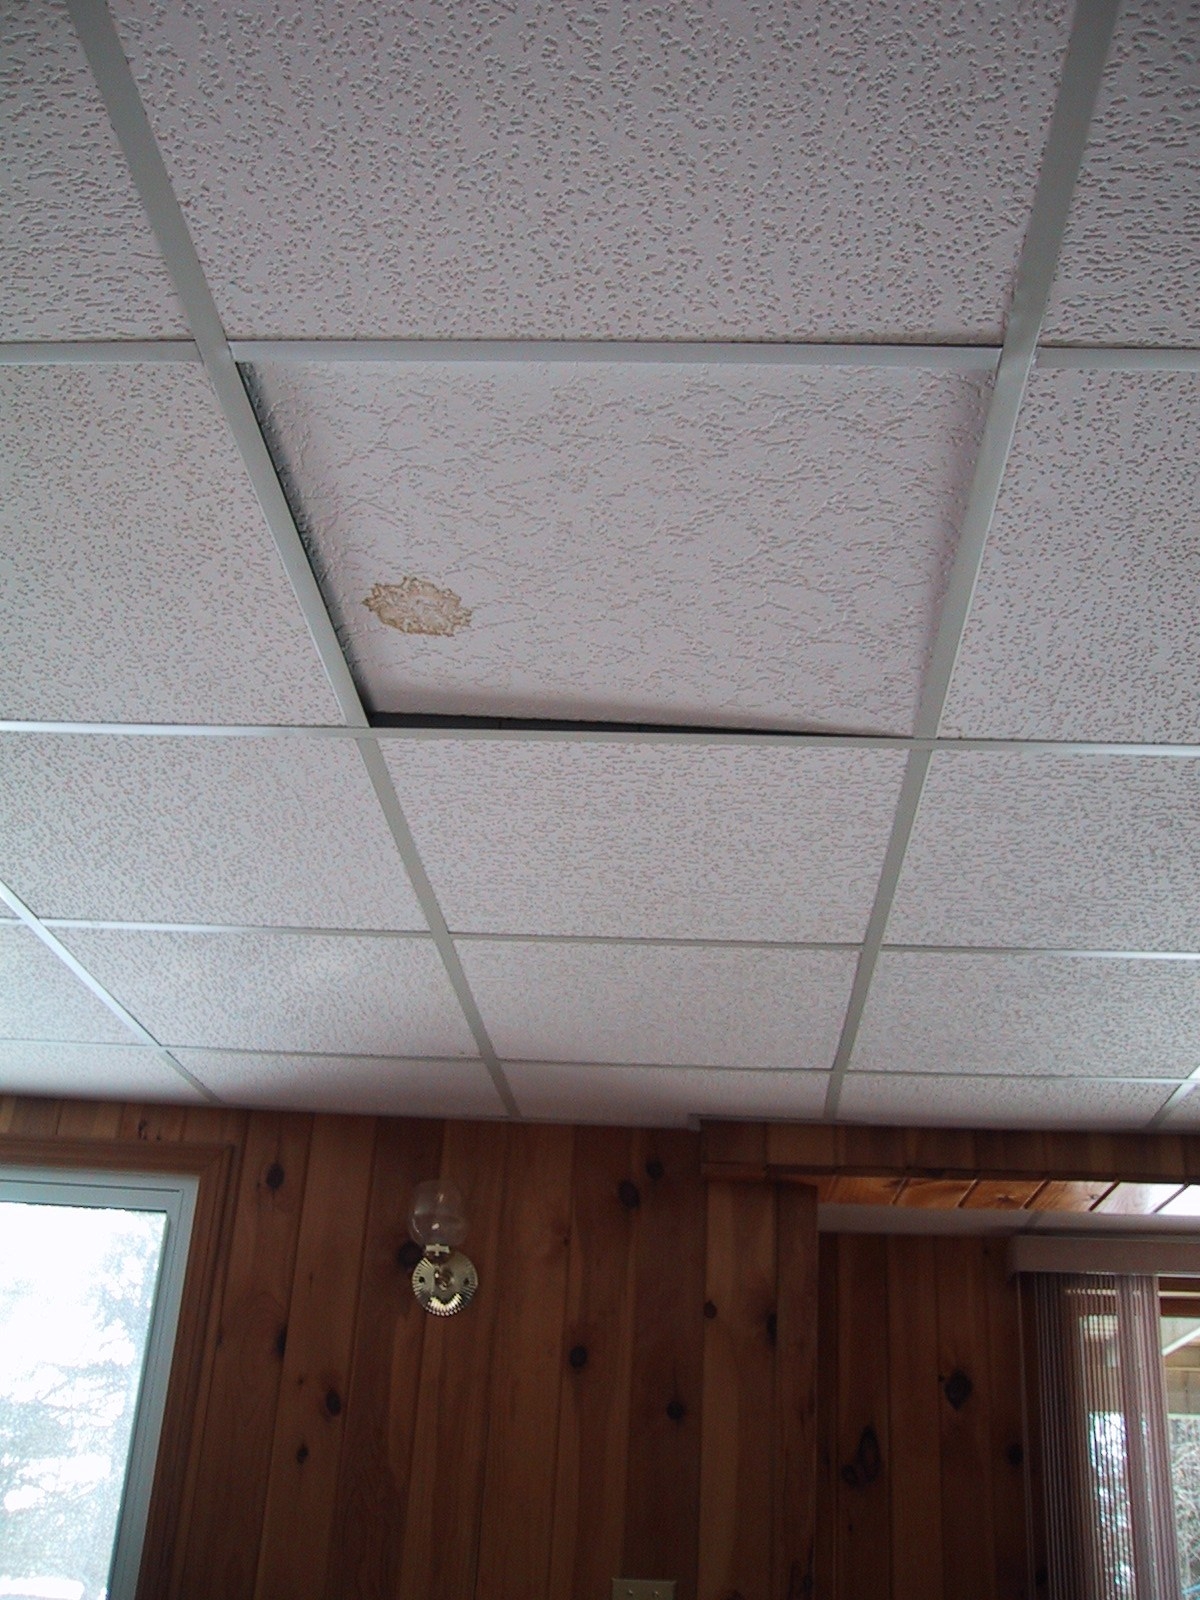 Asbestos Ceiling Tile Size Asbestos Ceiling Tile Size ceiling decorative drop ceiling tiles wonderful cardboard 1200 X 1600